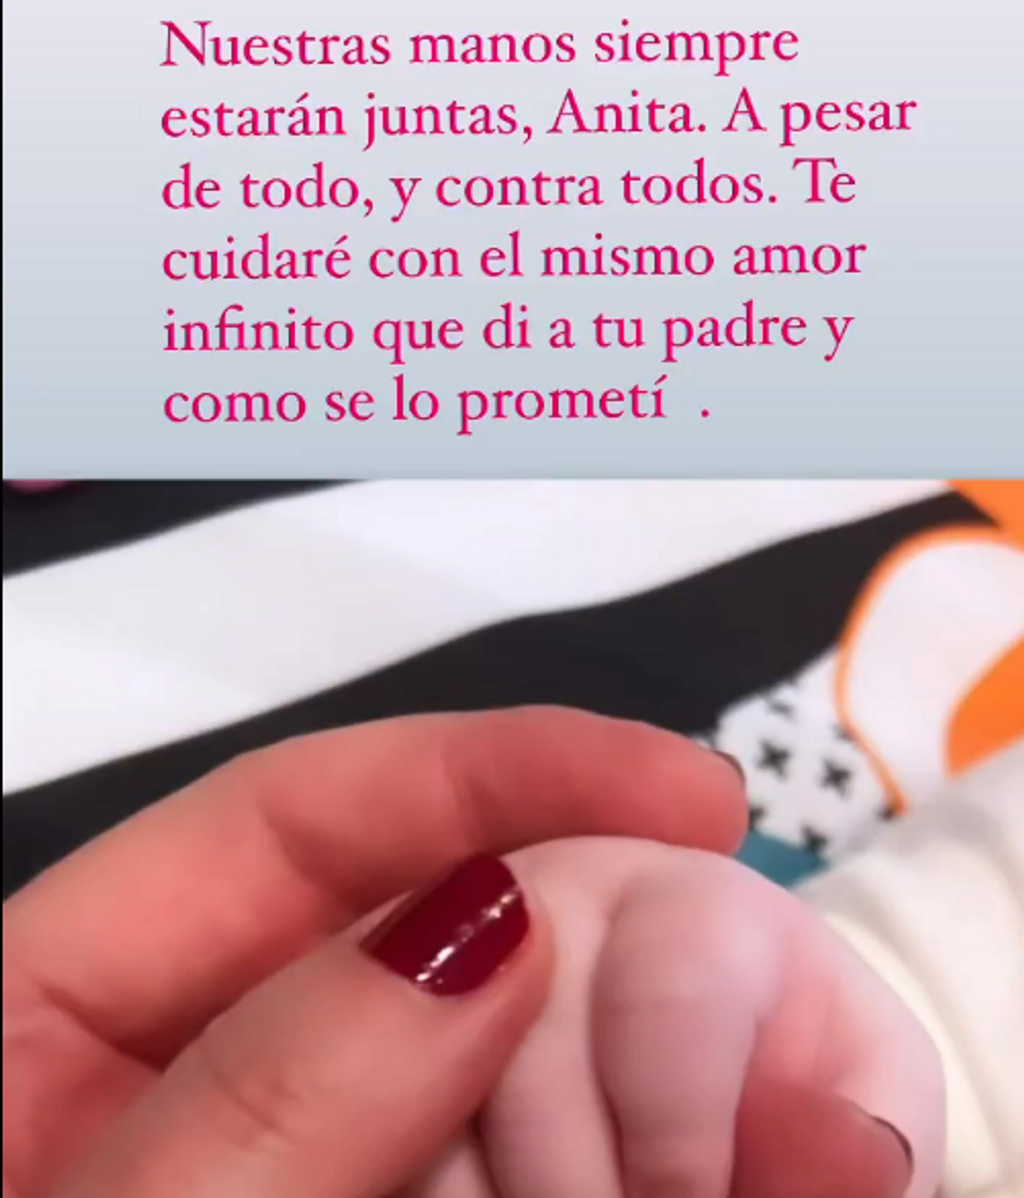 Ana Obregón le hace una promesa a su nieta Anita